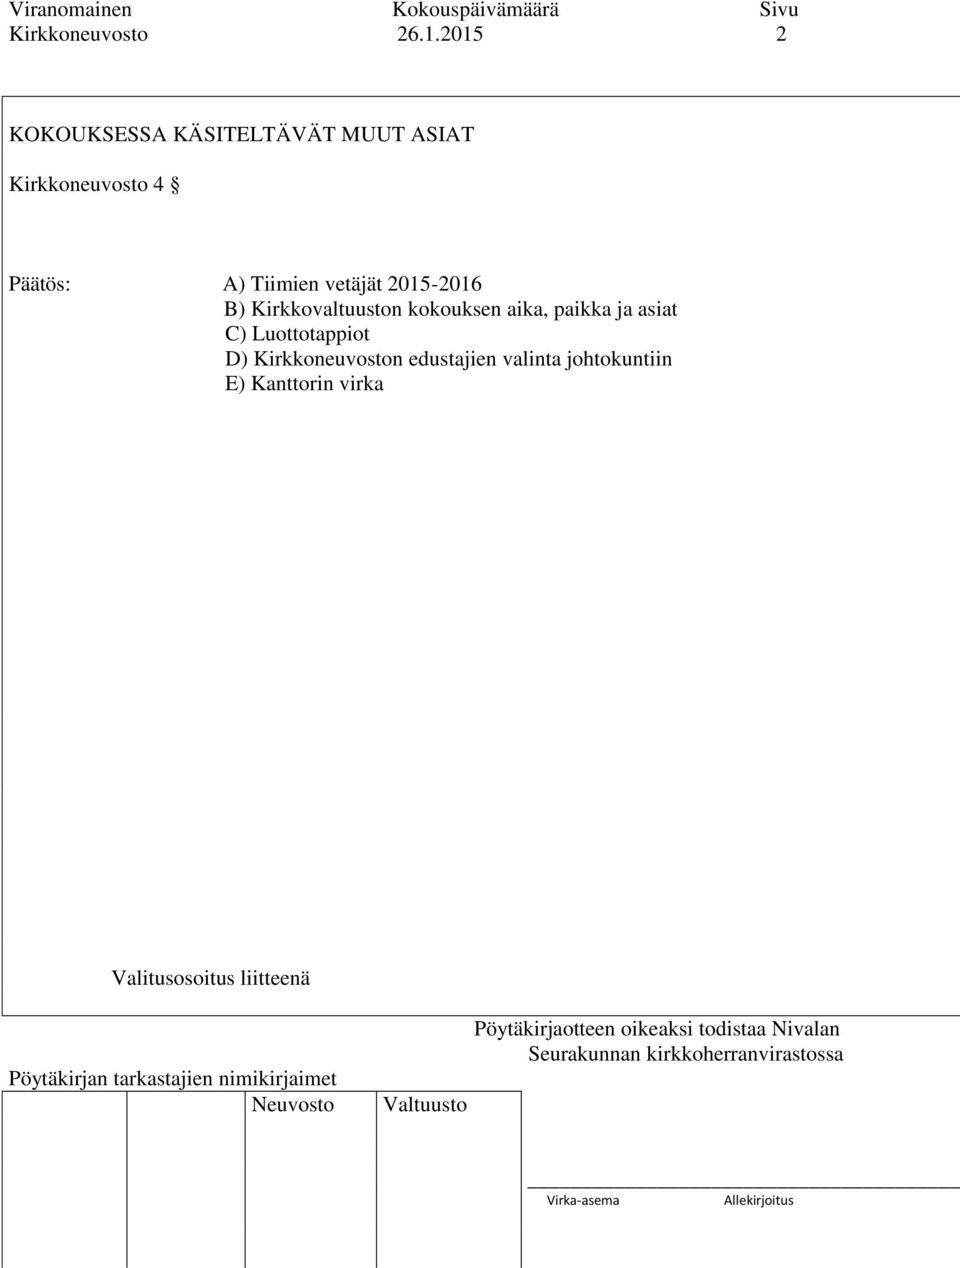 Päätös: A) Tiimien vetäjät 2015-2016 B) Kirkkovaltuuston